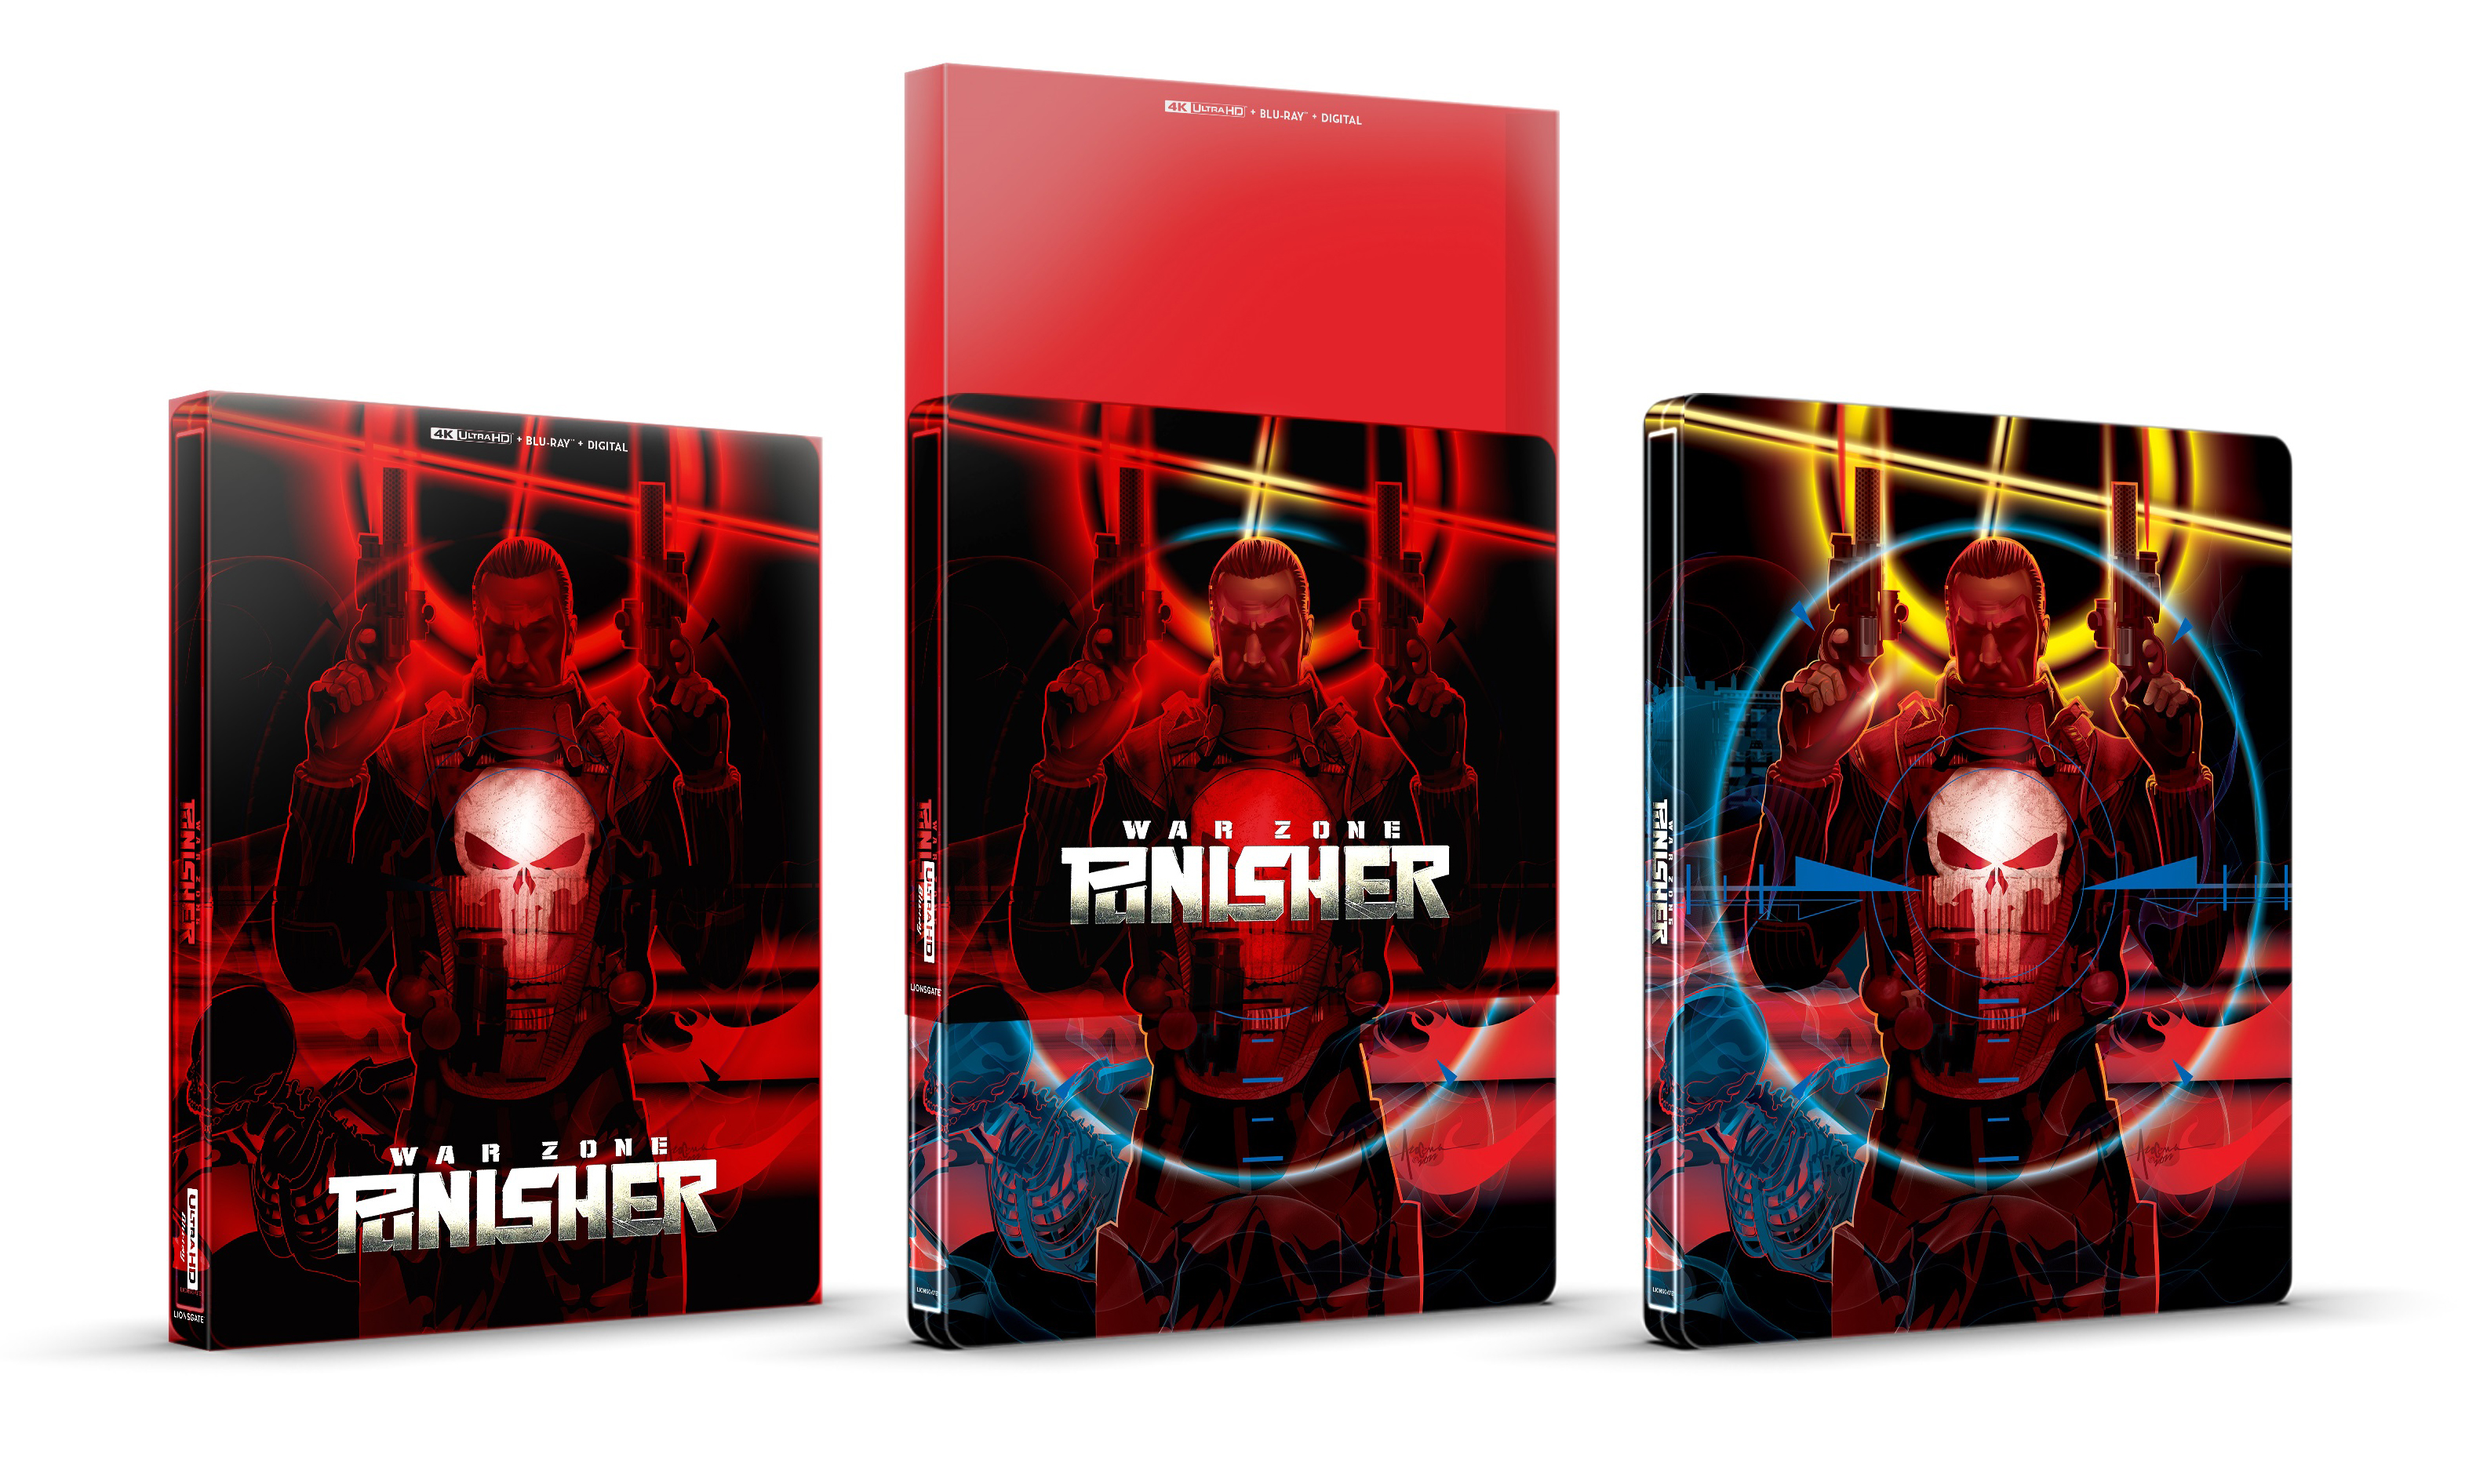 Punisher: War Zone [DVD]